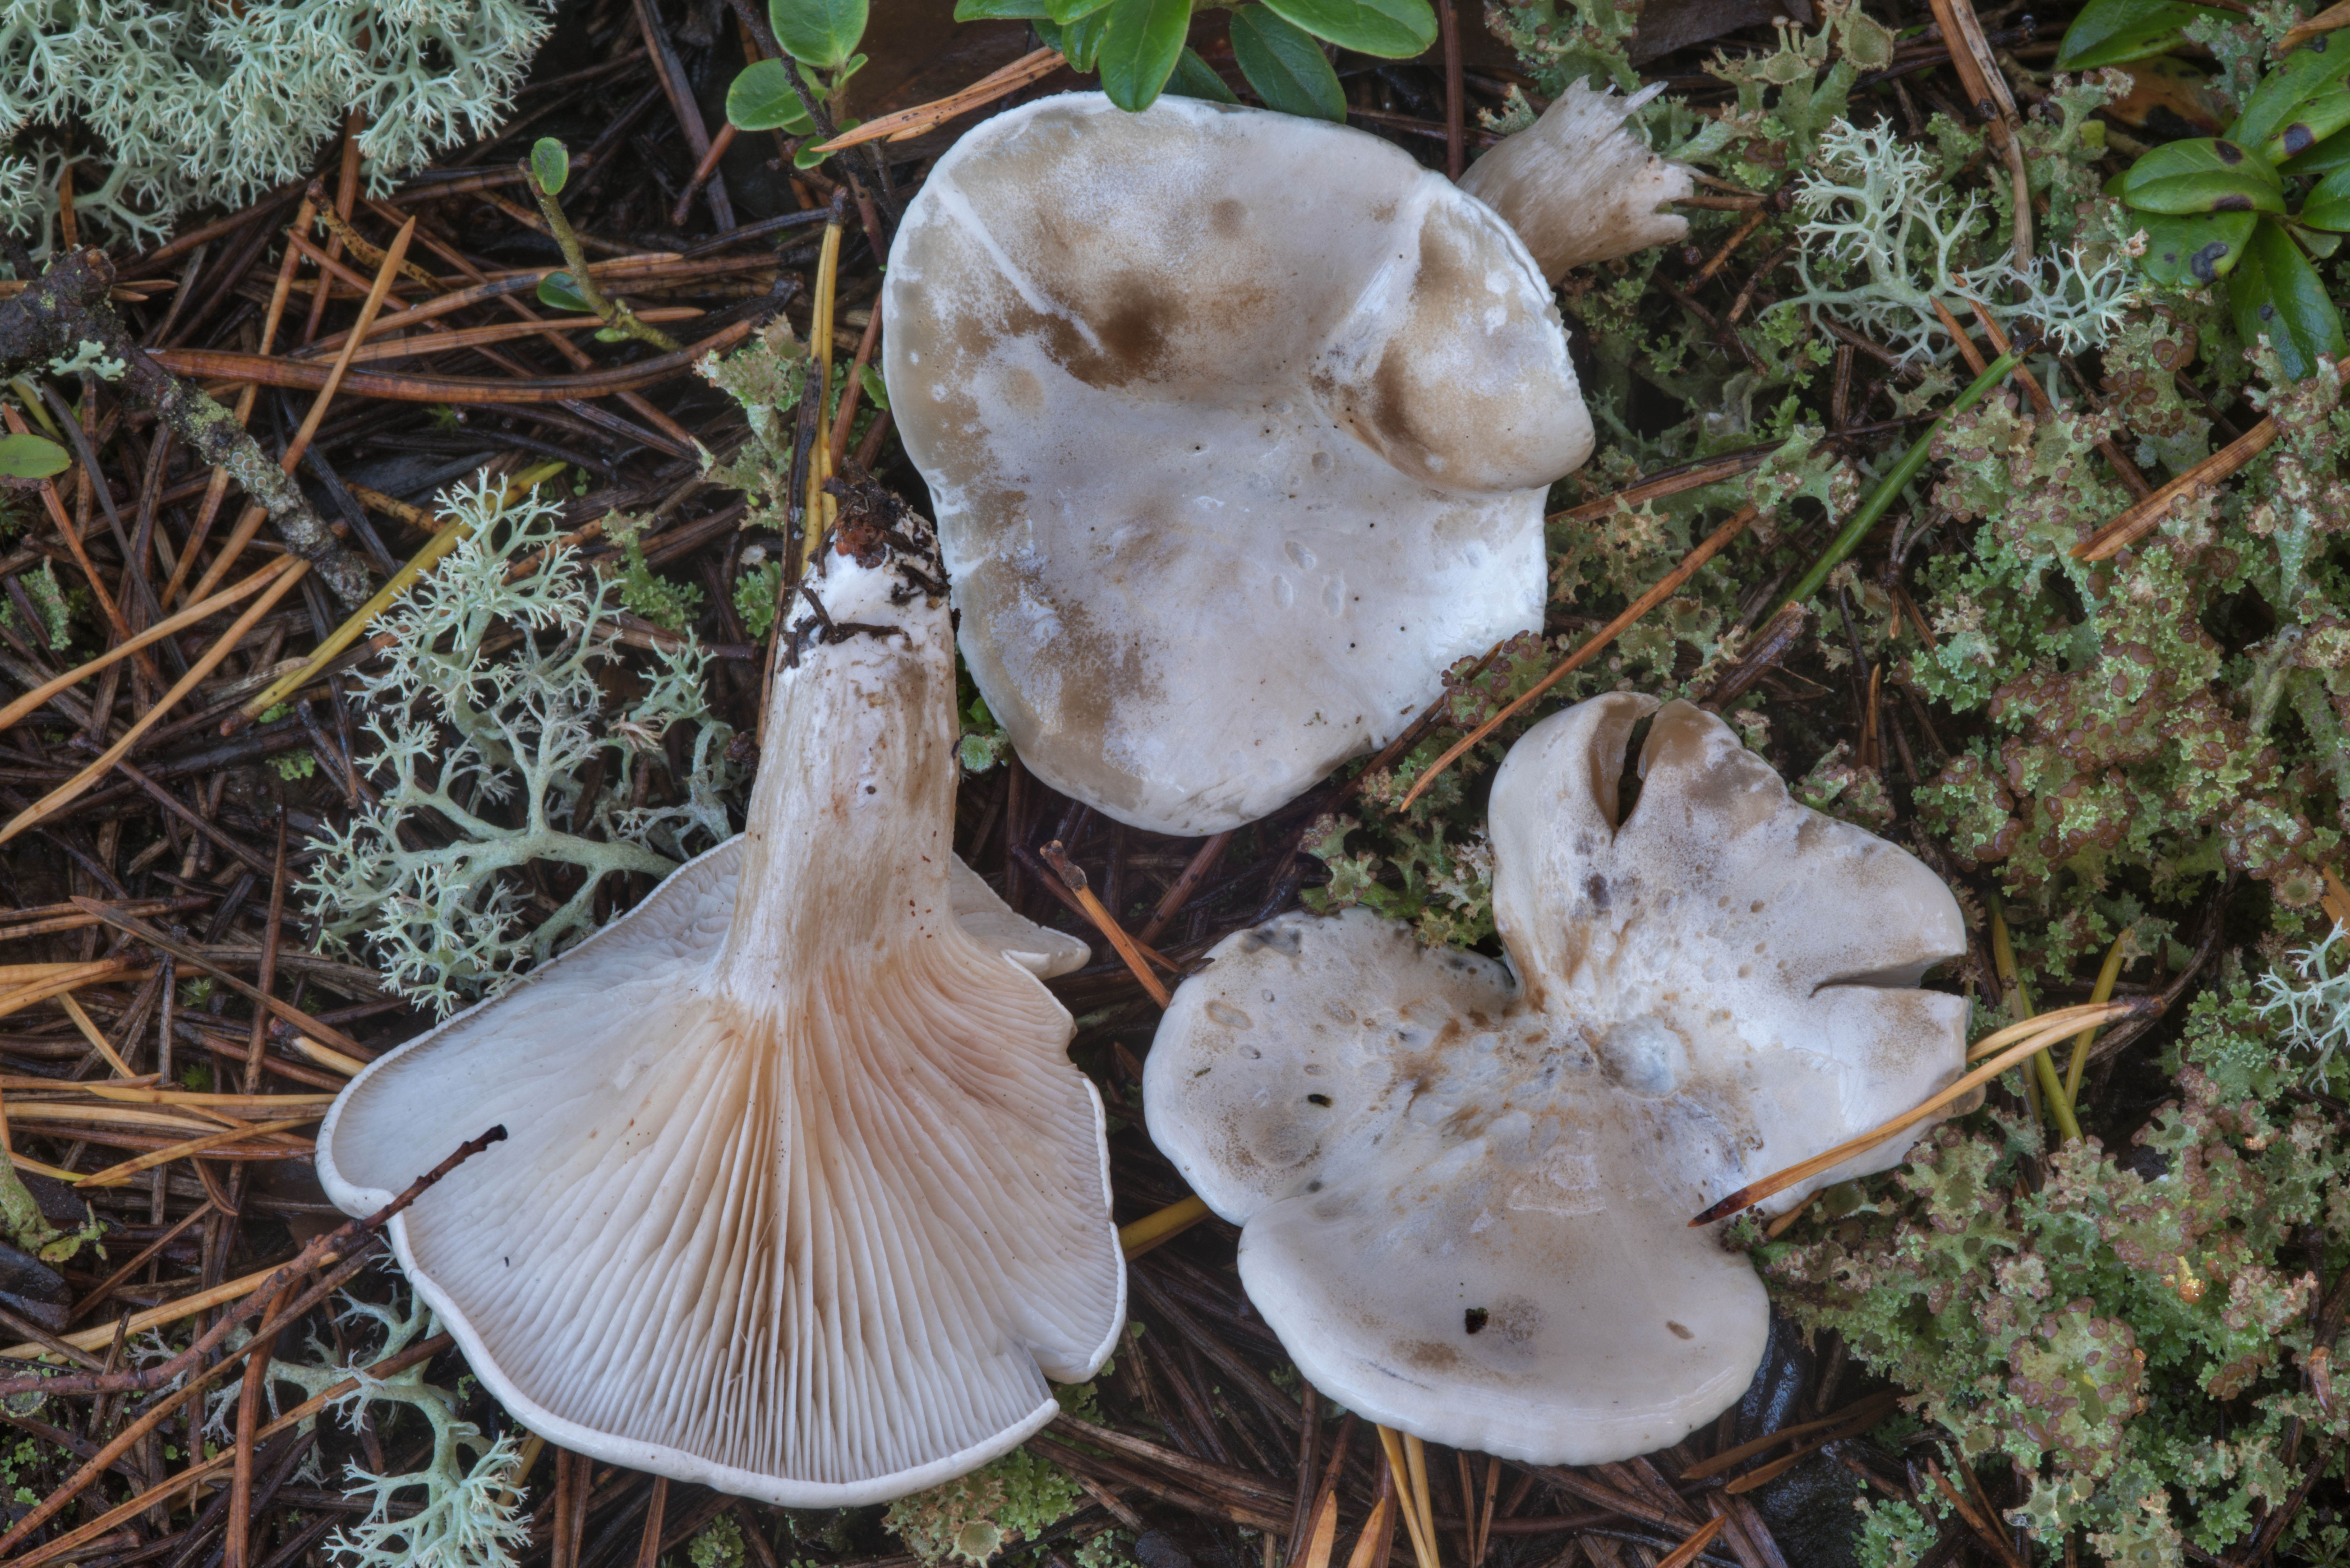 Ивишень (подвишенник) - фото гриба и описание его пользы и вреда